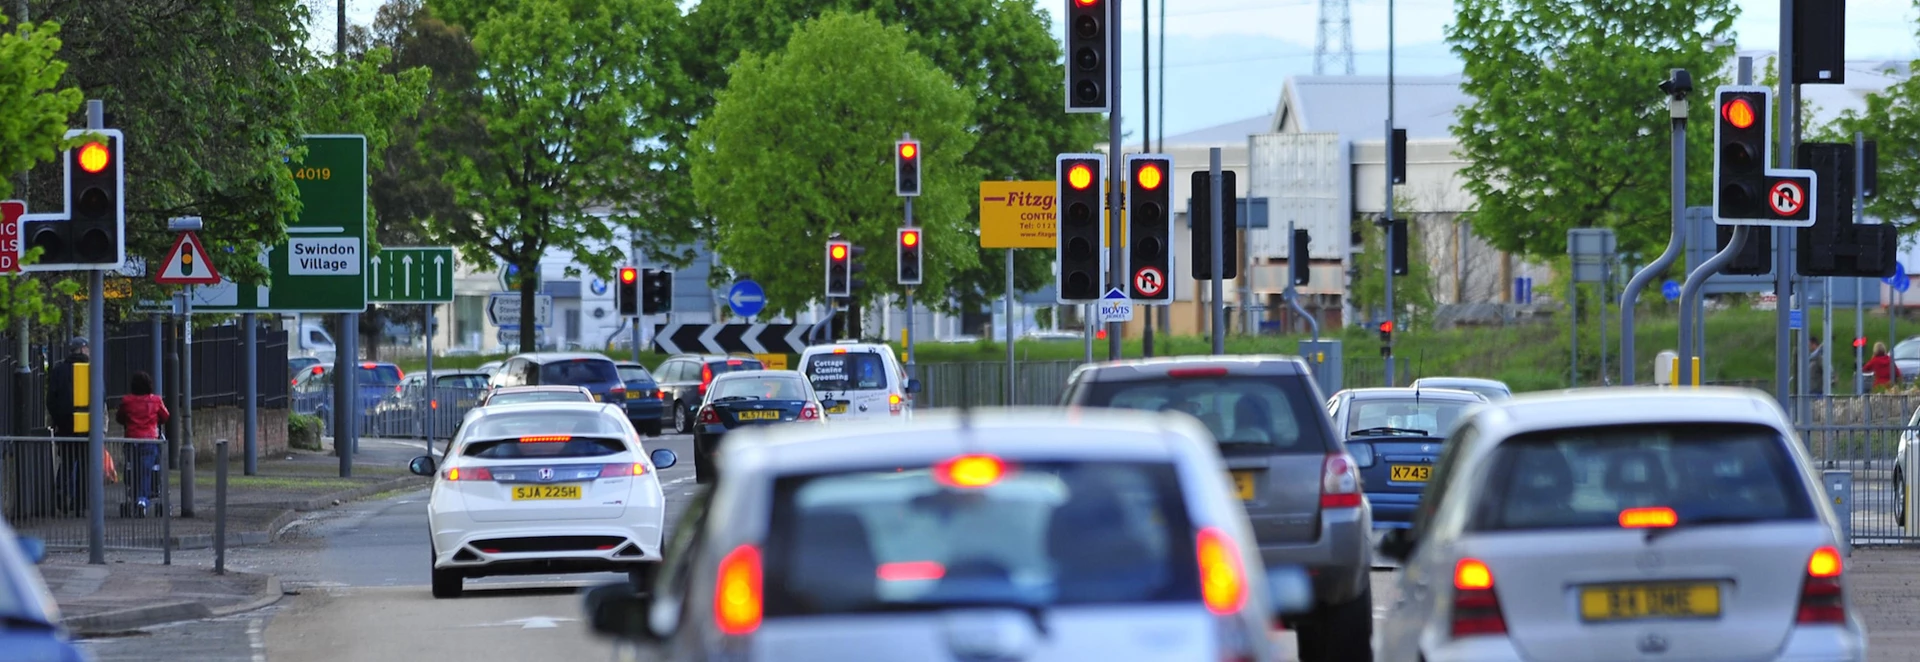 Volkswagen working towards making junctions safer